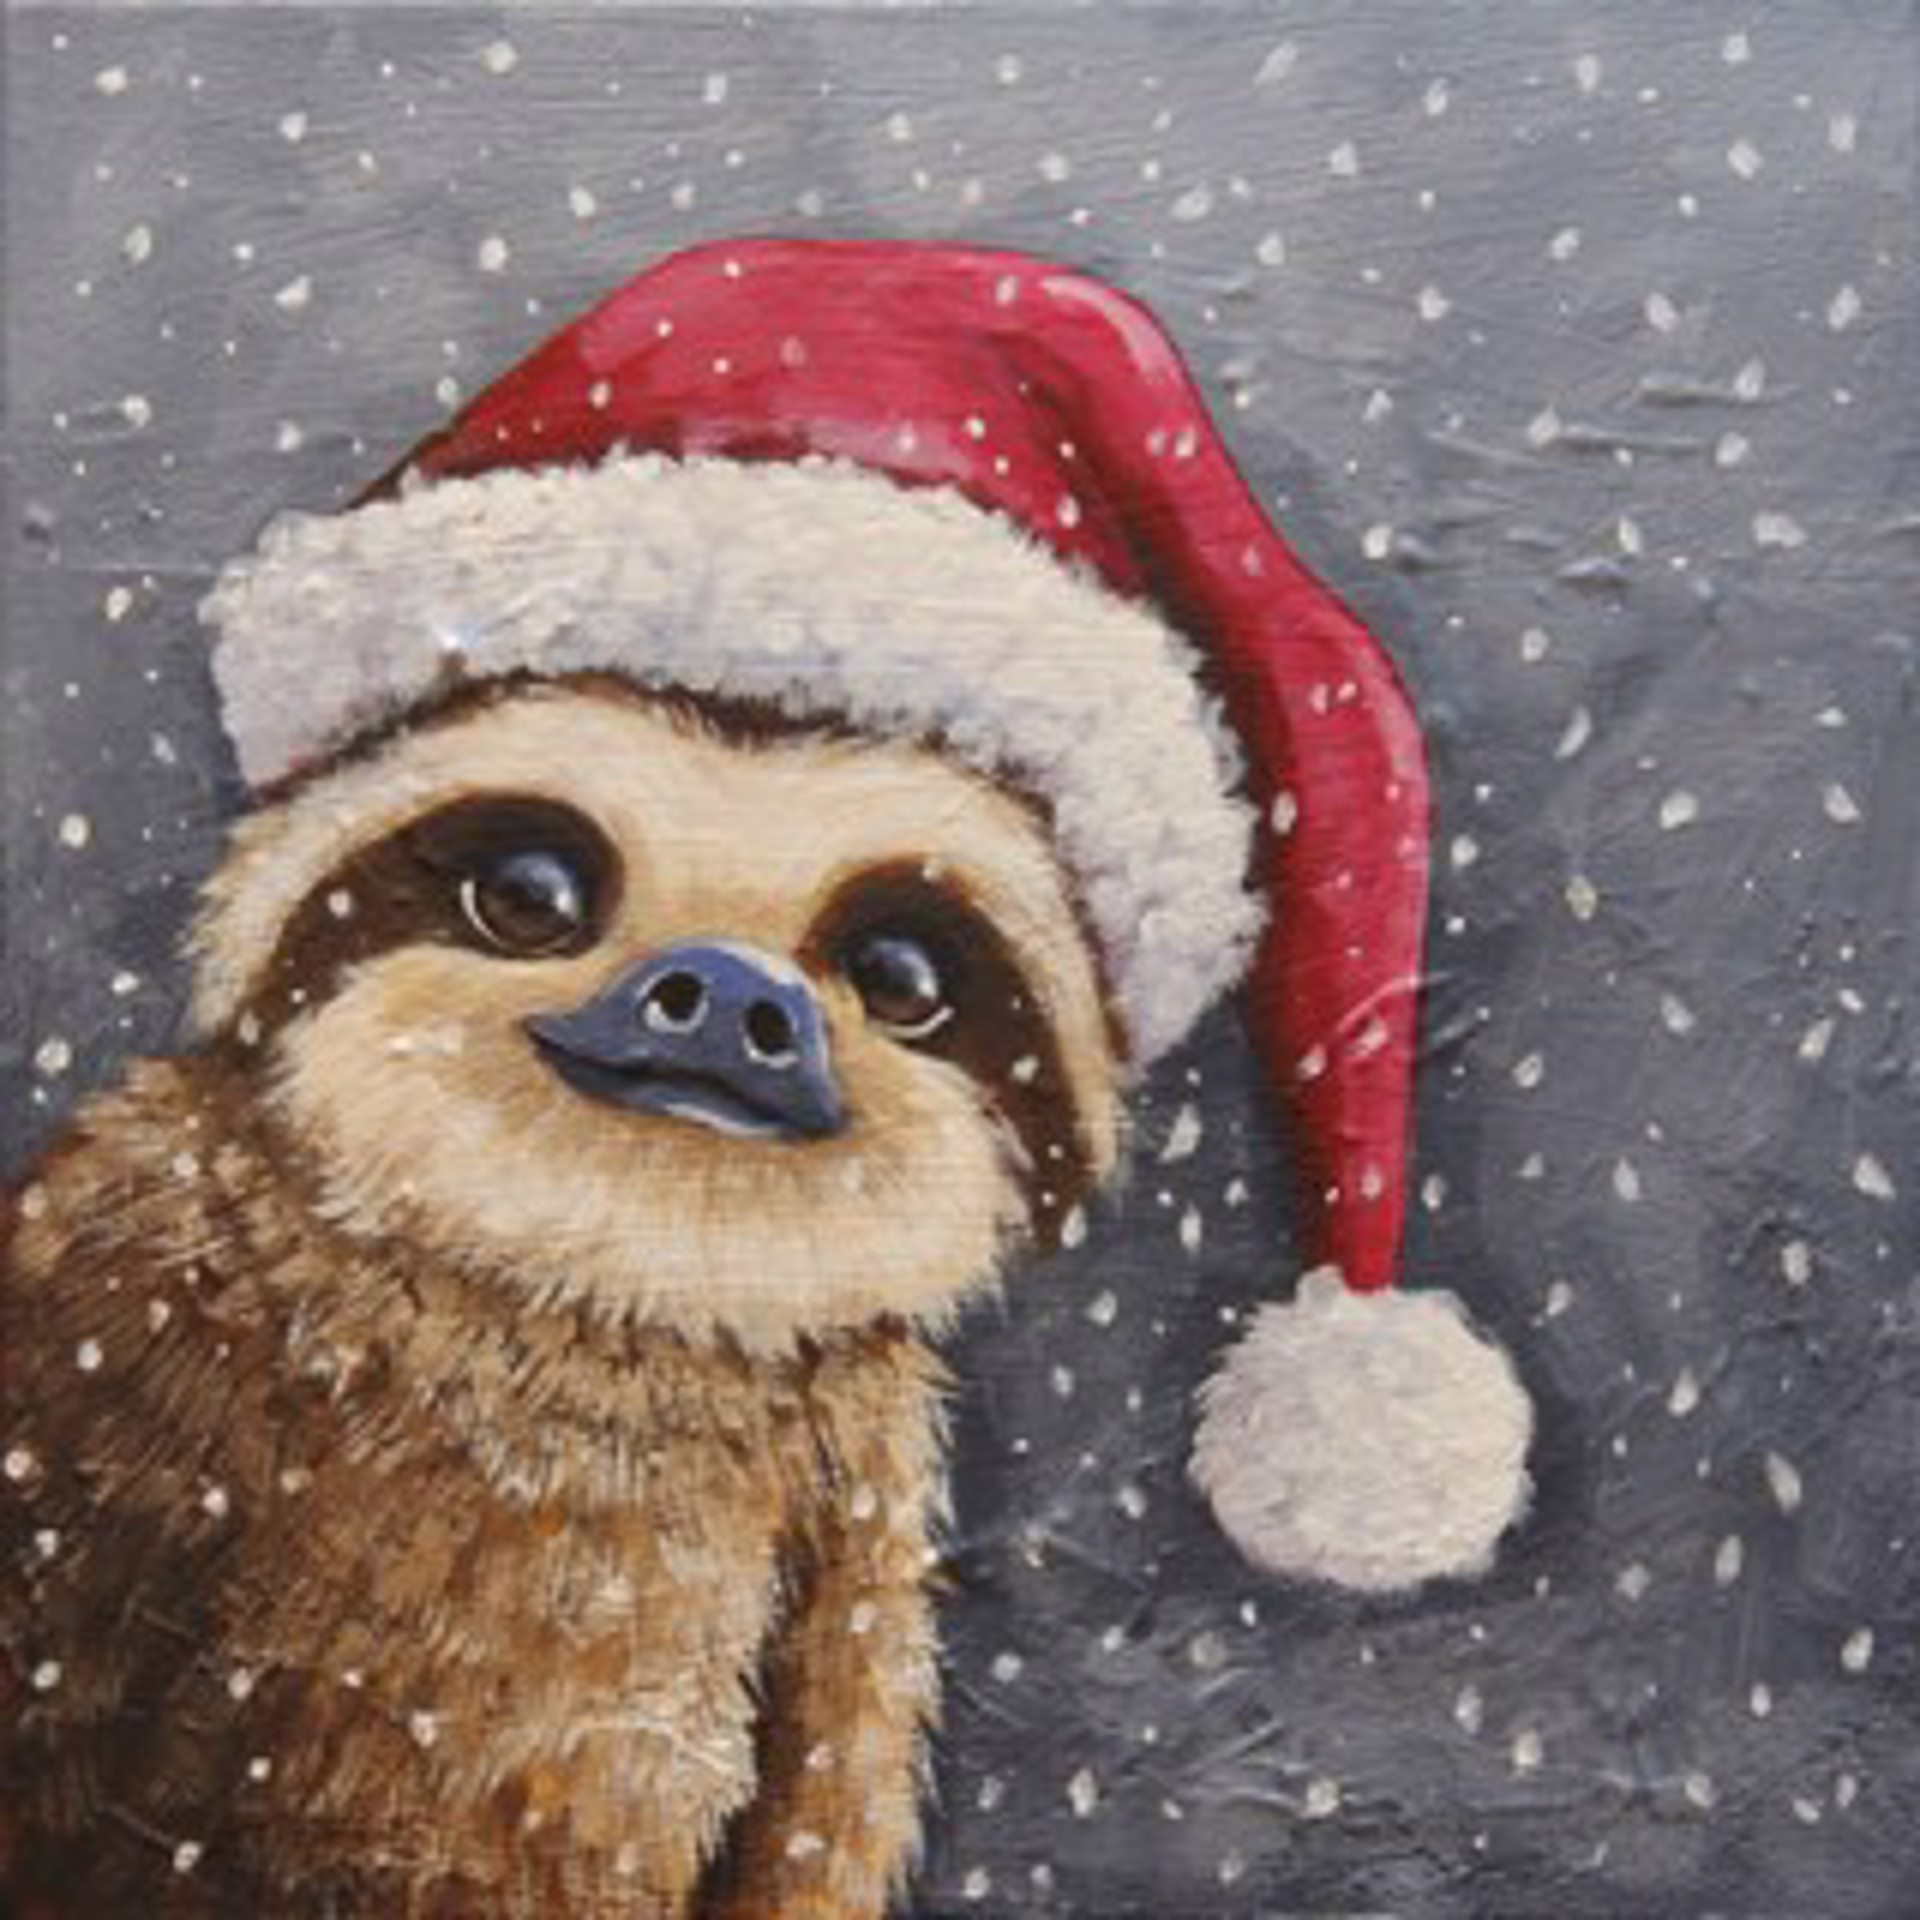 Sloth by Lucia Stewart